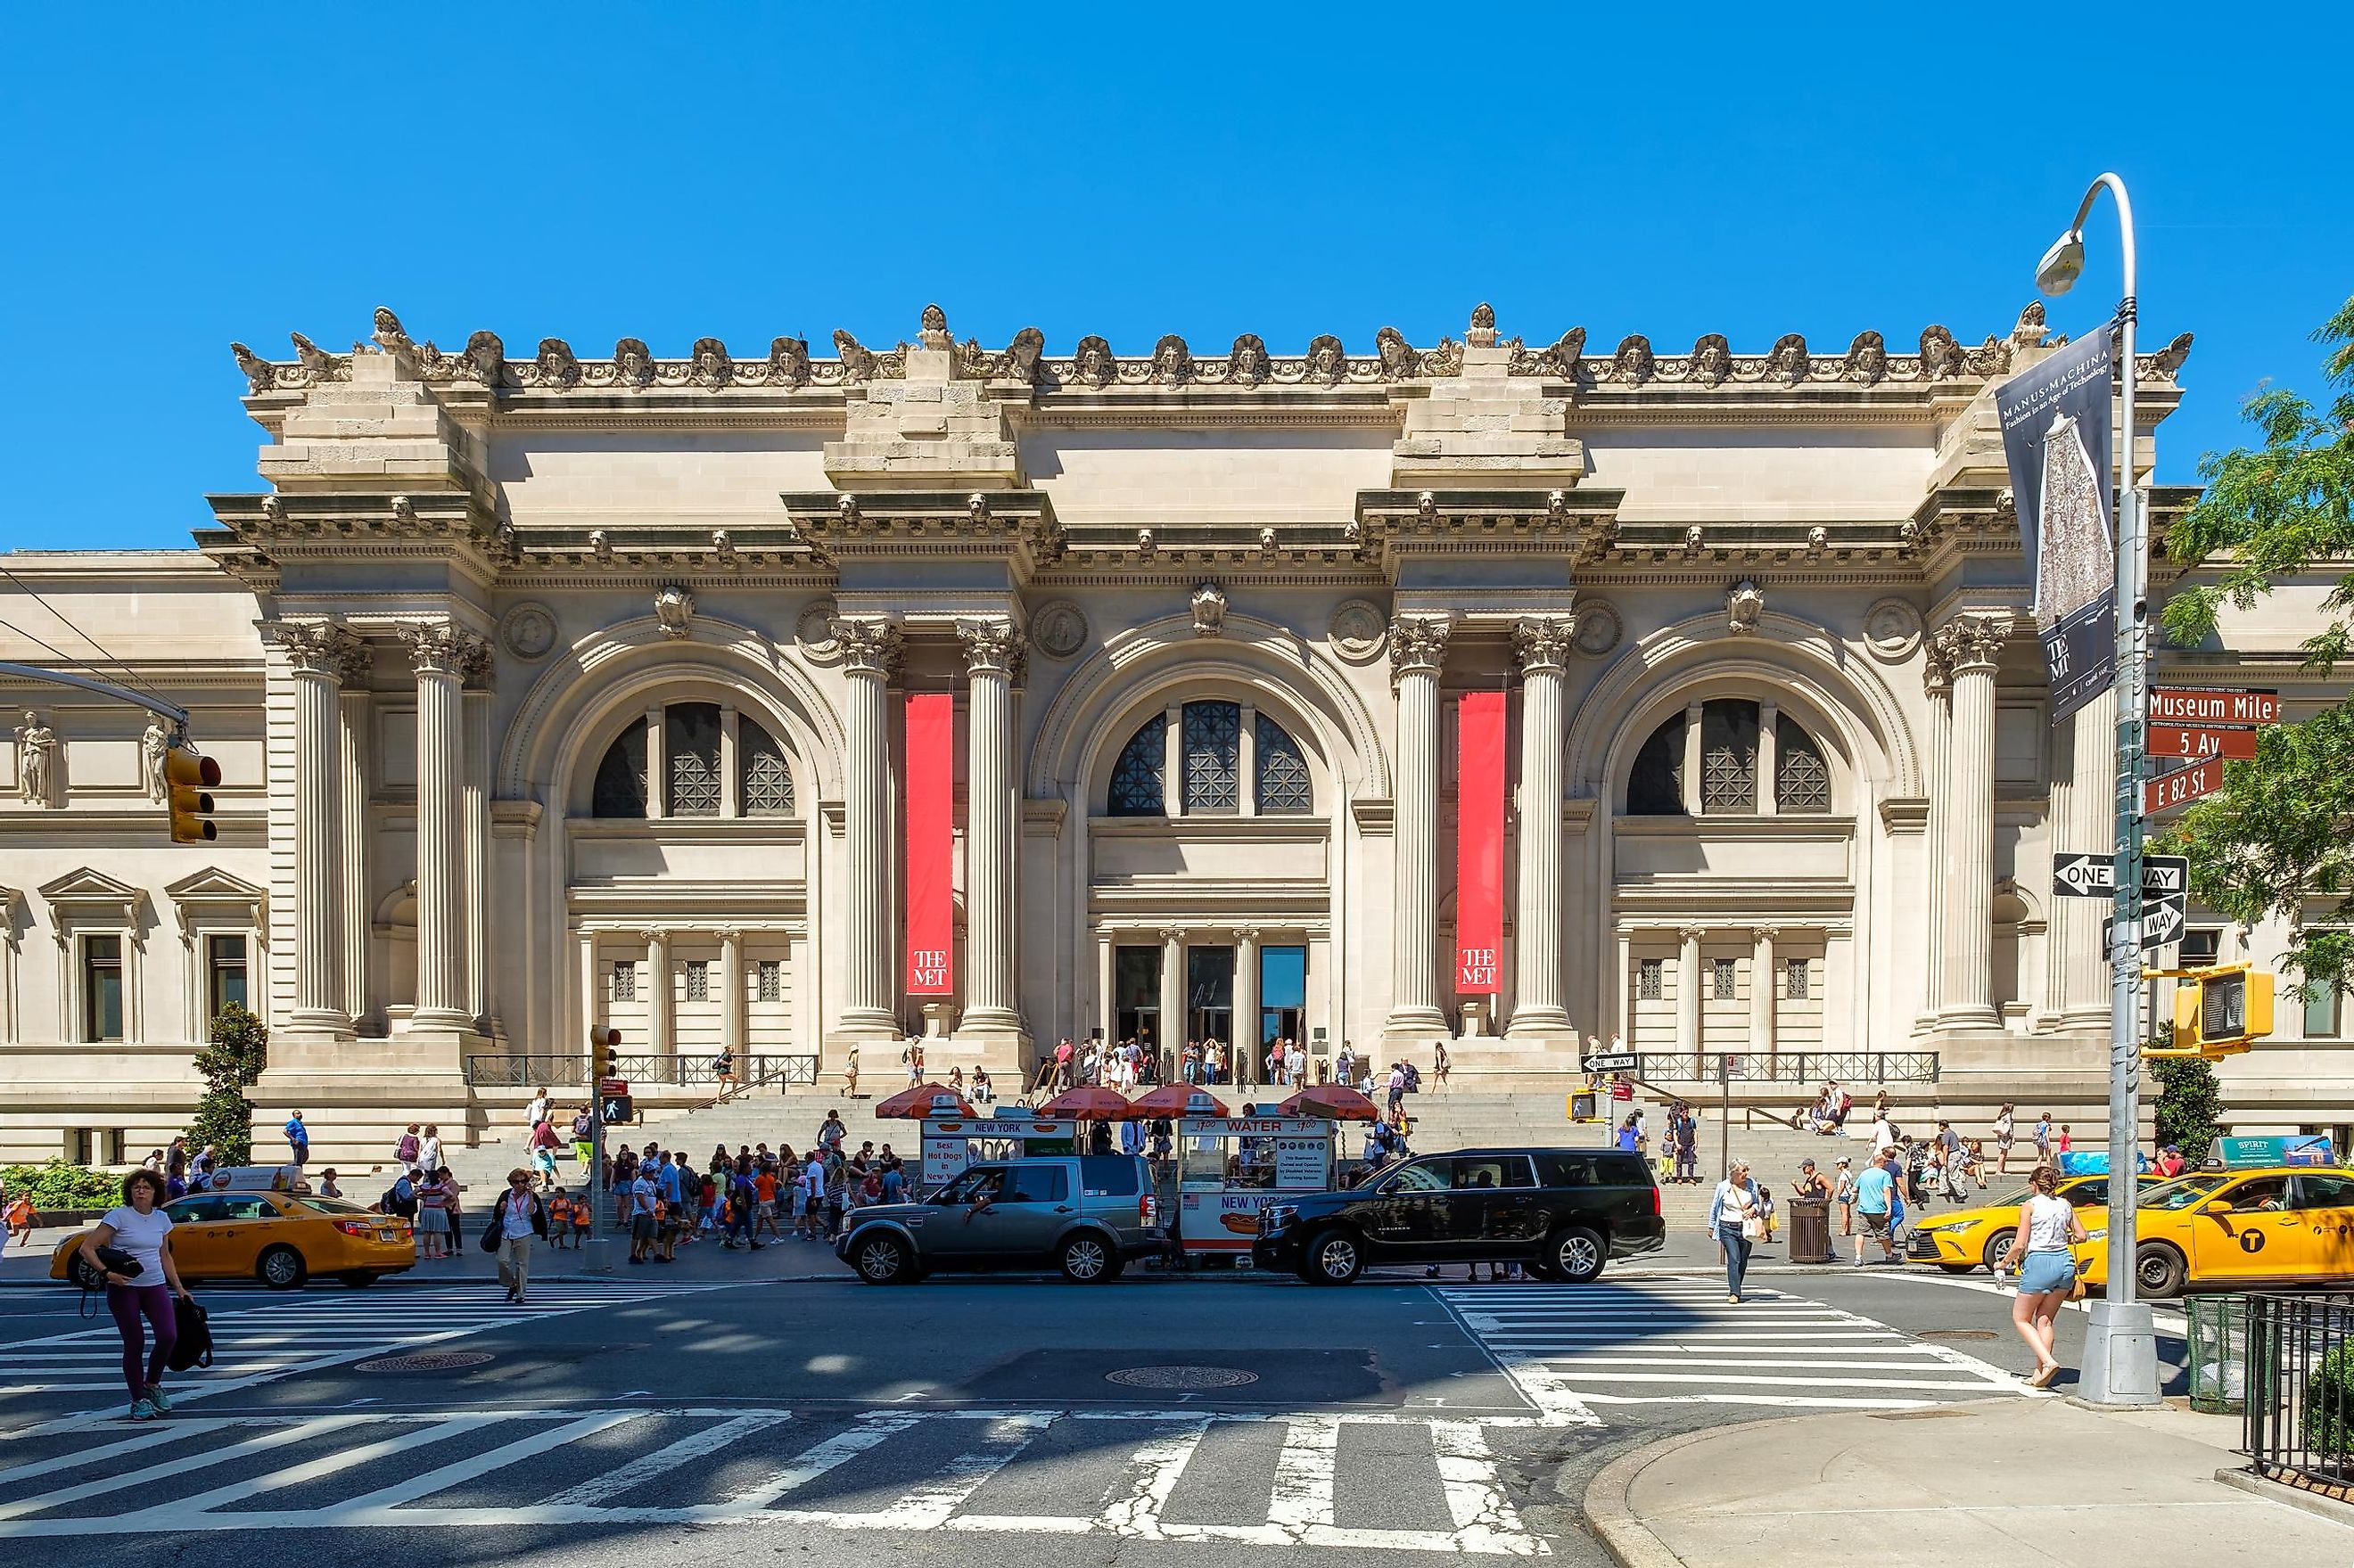 The Metropolitan Museum in New York